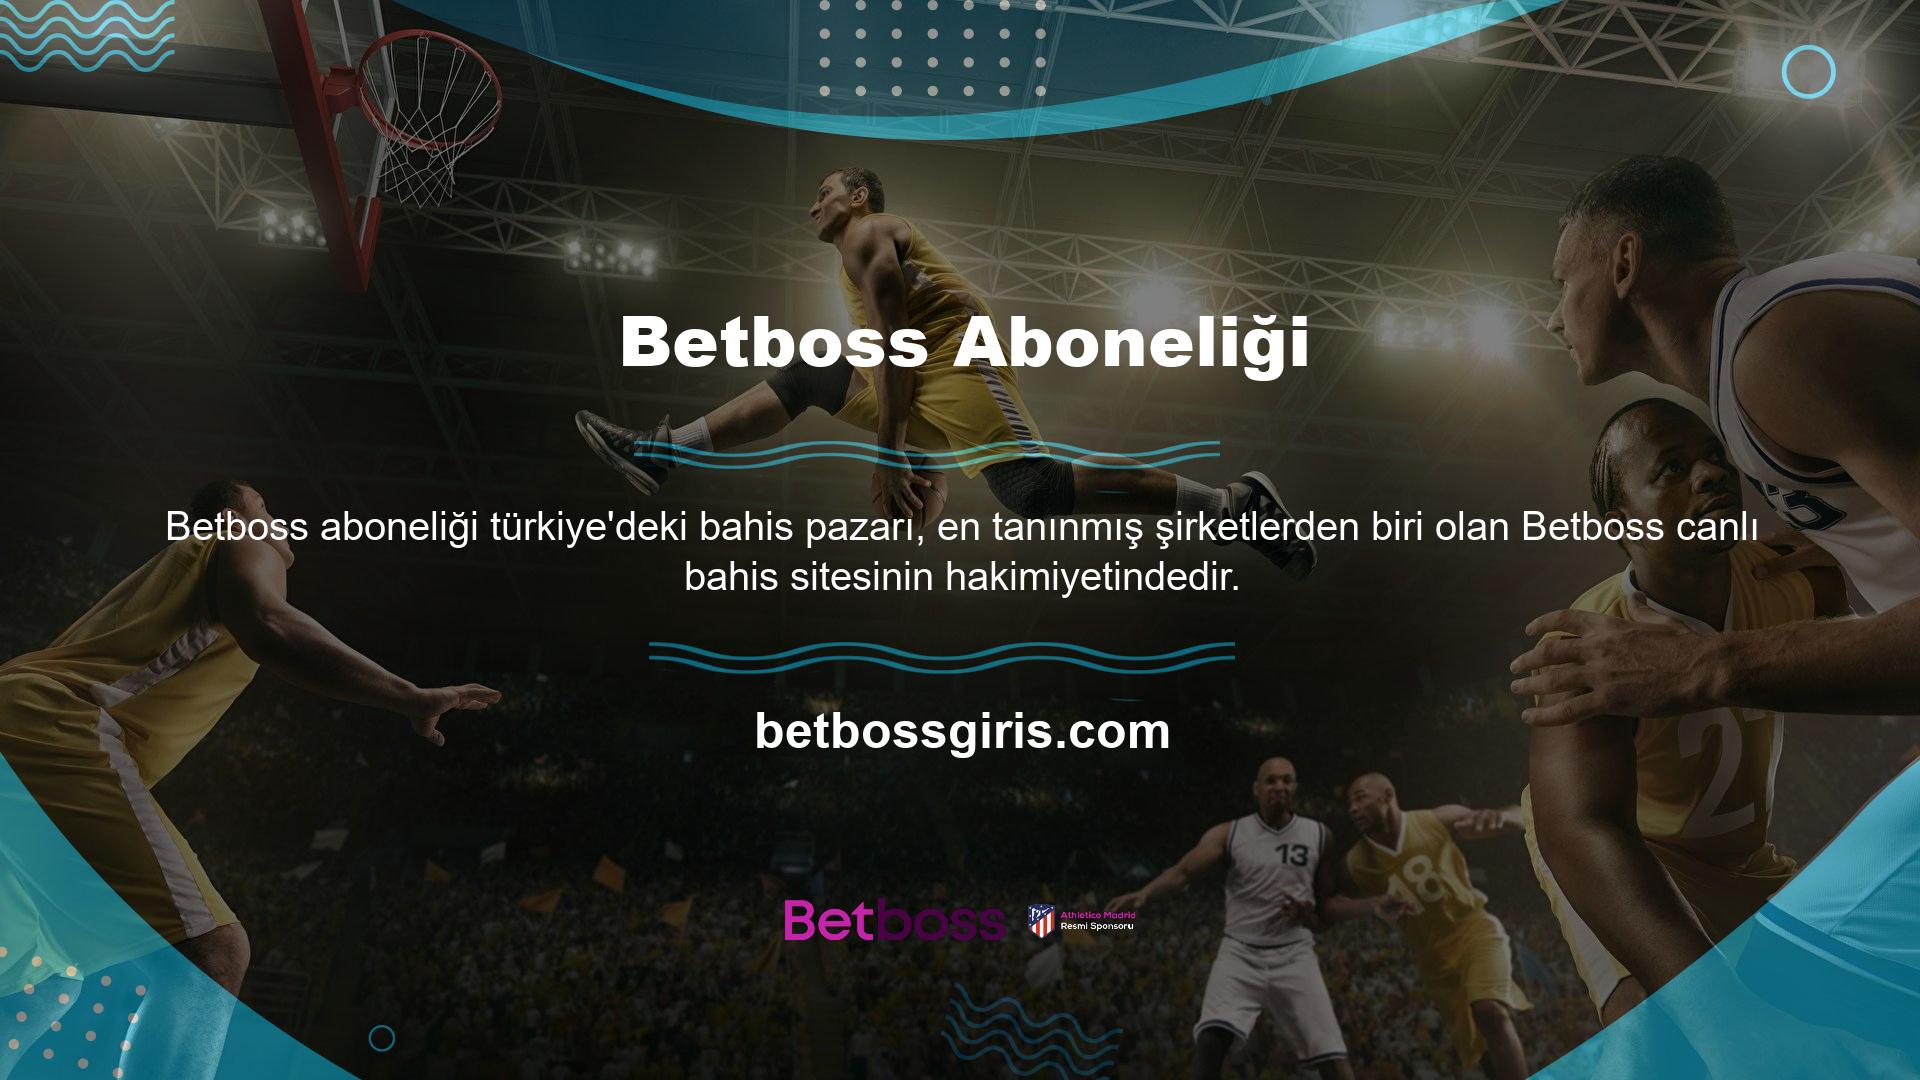 Betboss Instagram adresi, üyelerin casino sitelerine kolaylıkla erişmelerini sağlar